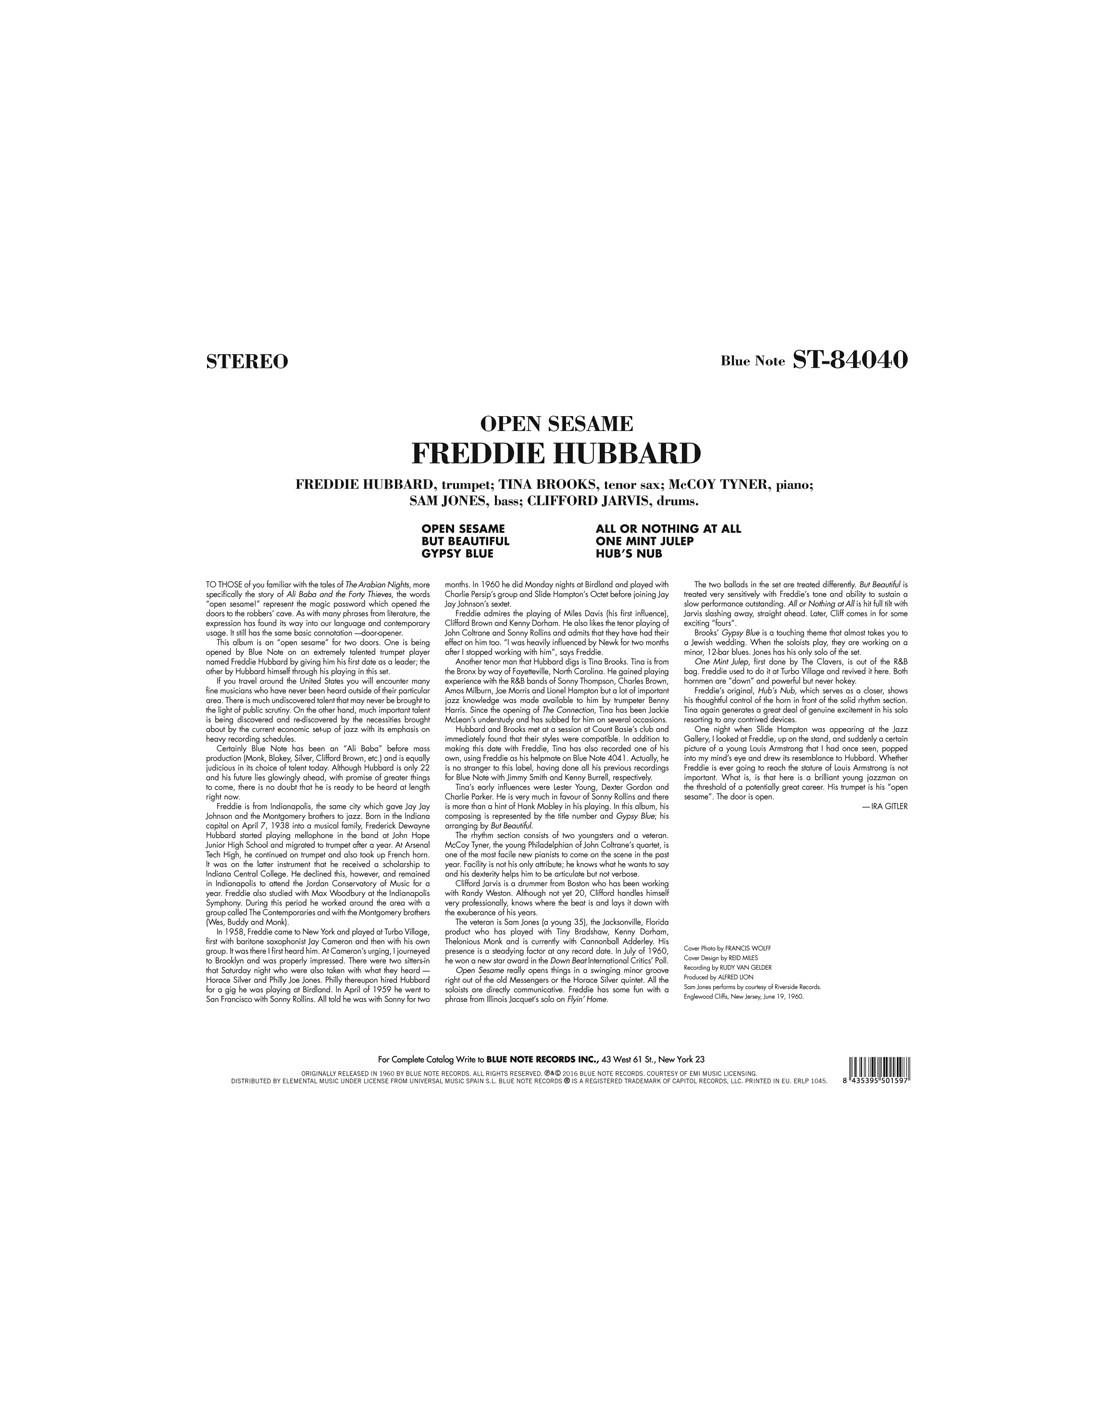 Limited　Gram　Edition　180　LP　Open　Hubbard　Freddie　Sesame